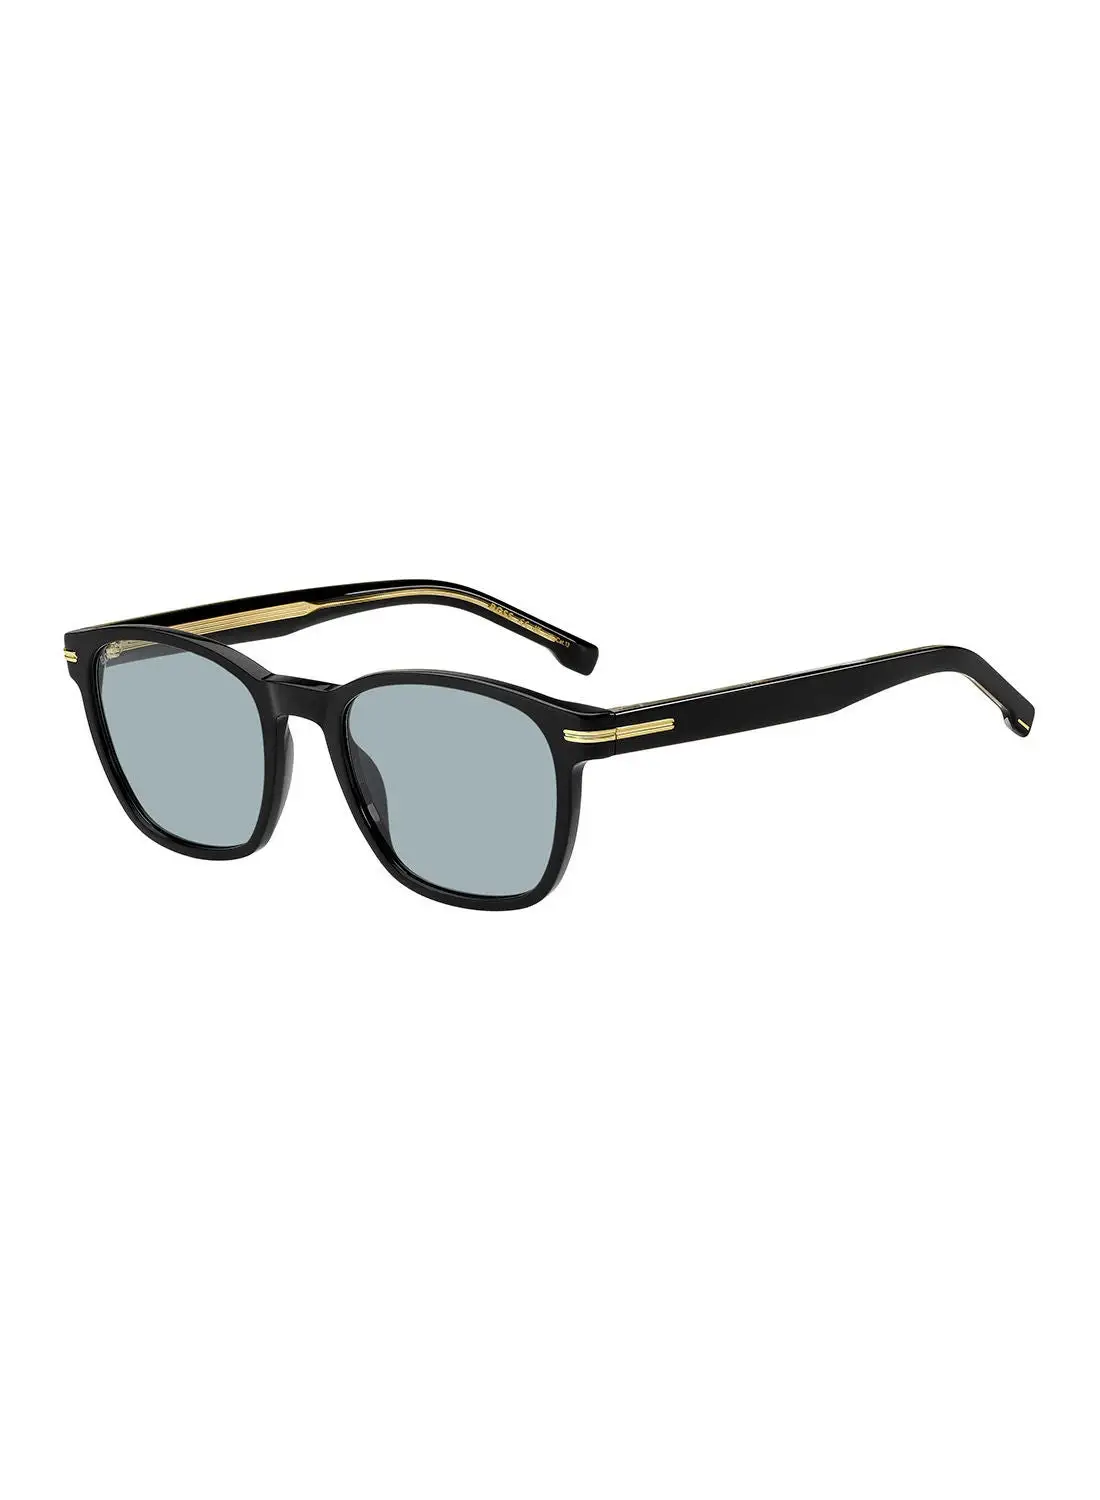 هيوغو بوس نظارة شمسية مربعة للرجال للحماية من الأشعة فوق البنفسجية - Boss 1505/S Black 52 - مقاس العدسة: 52 ملم